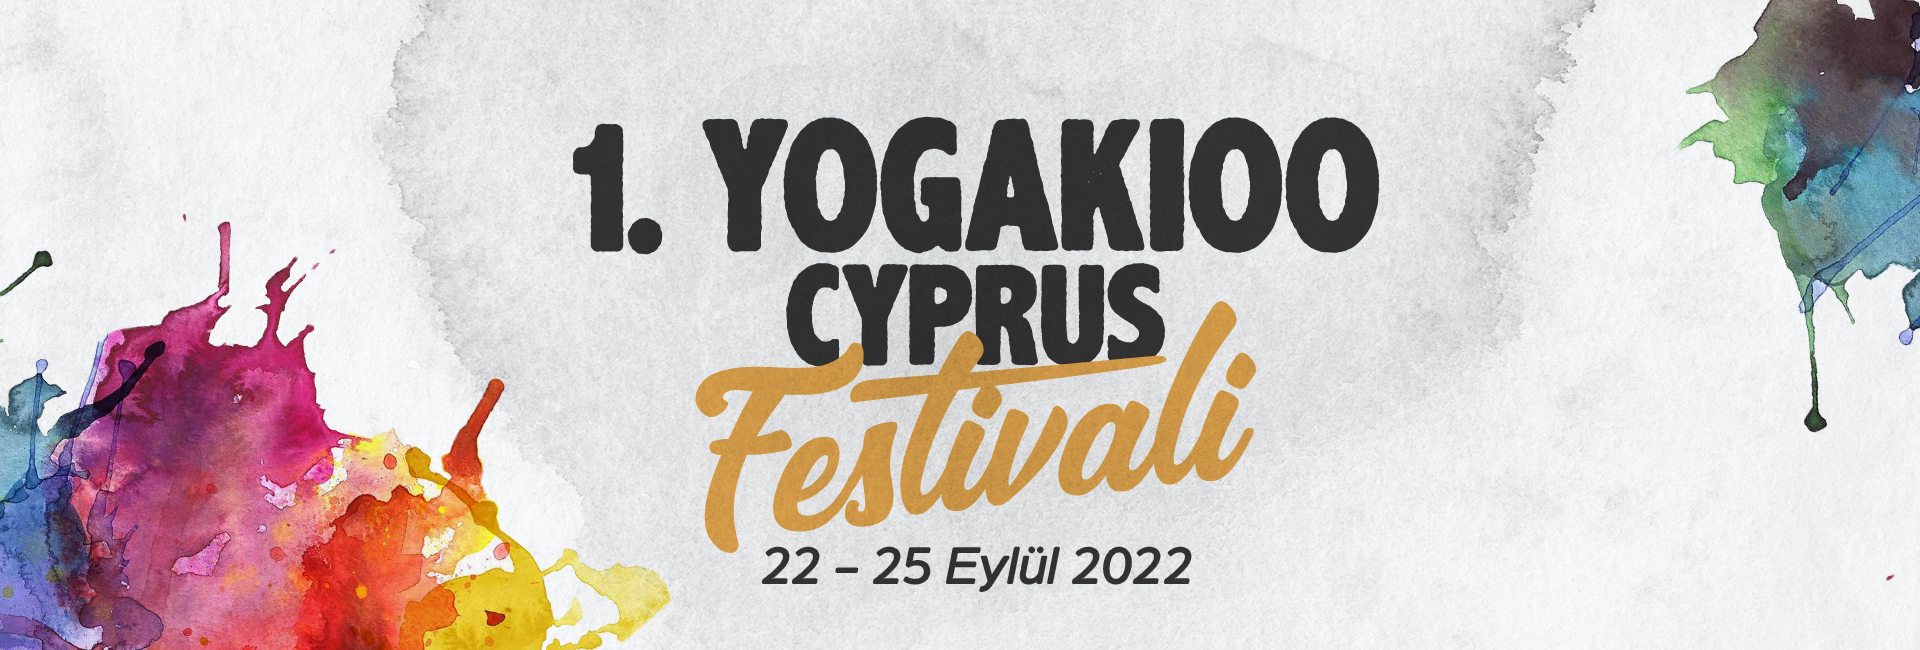 1. Yogakioo Cyprus Festivali